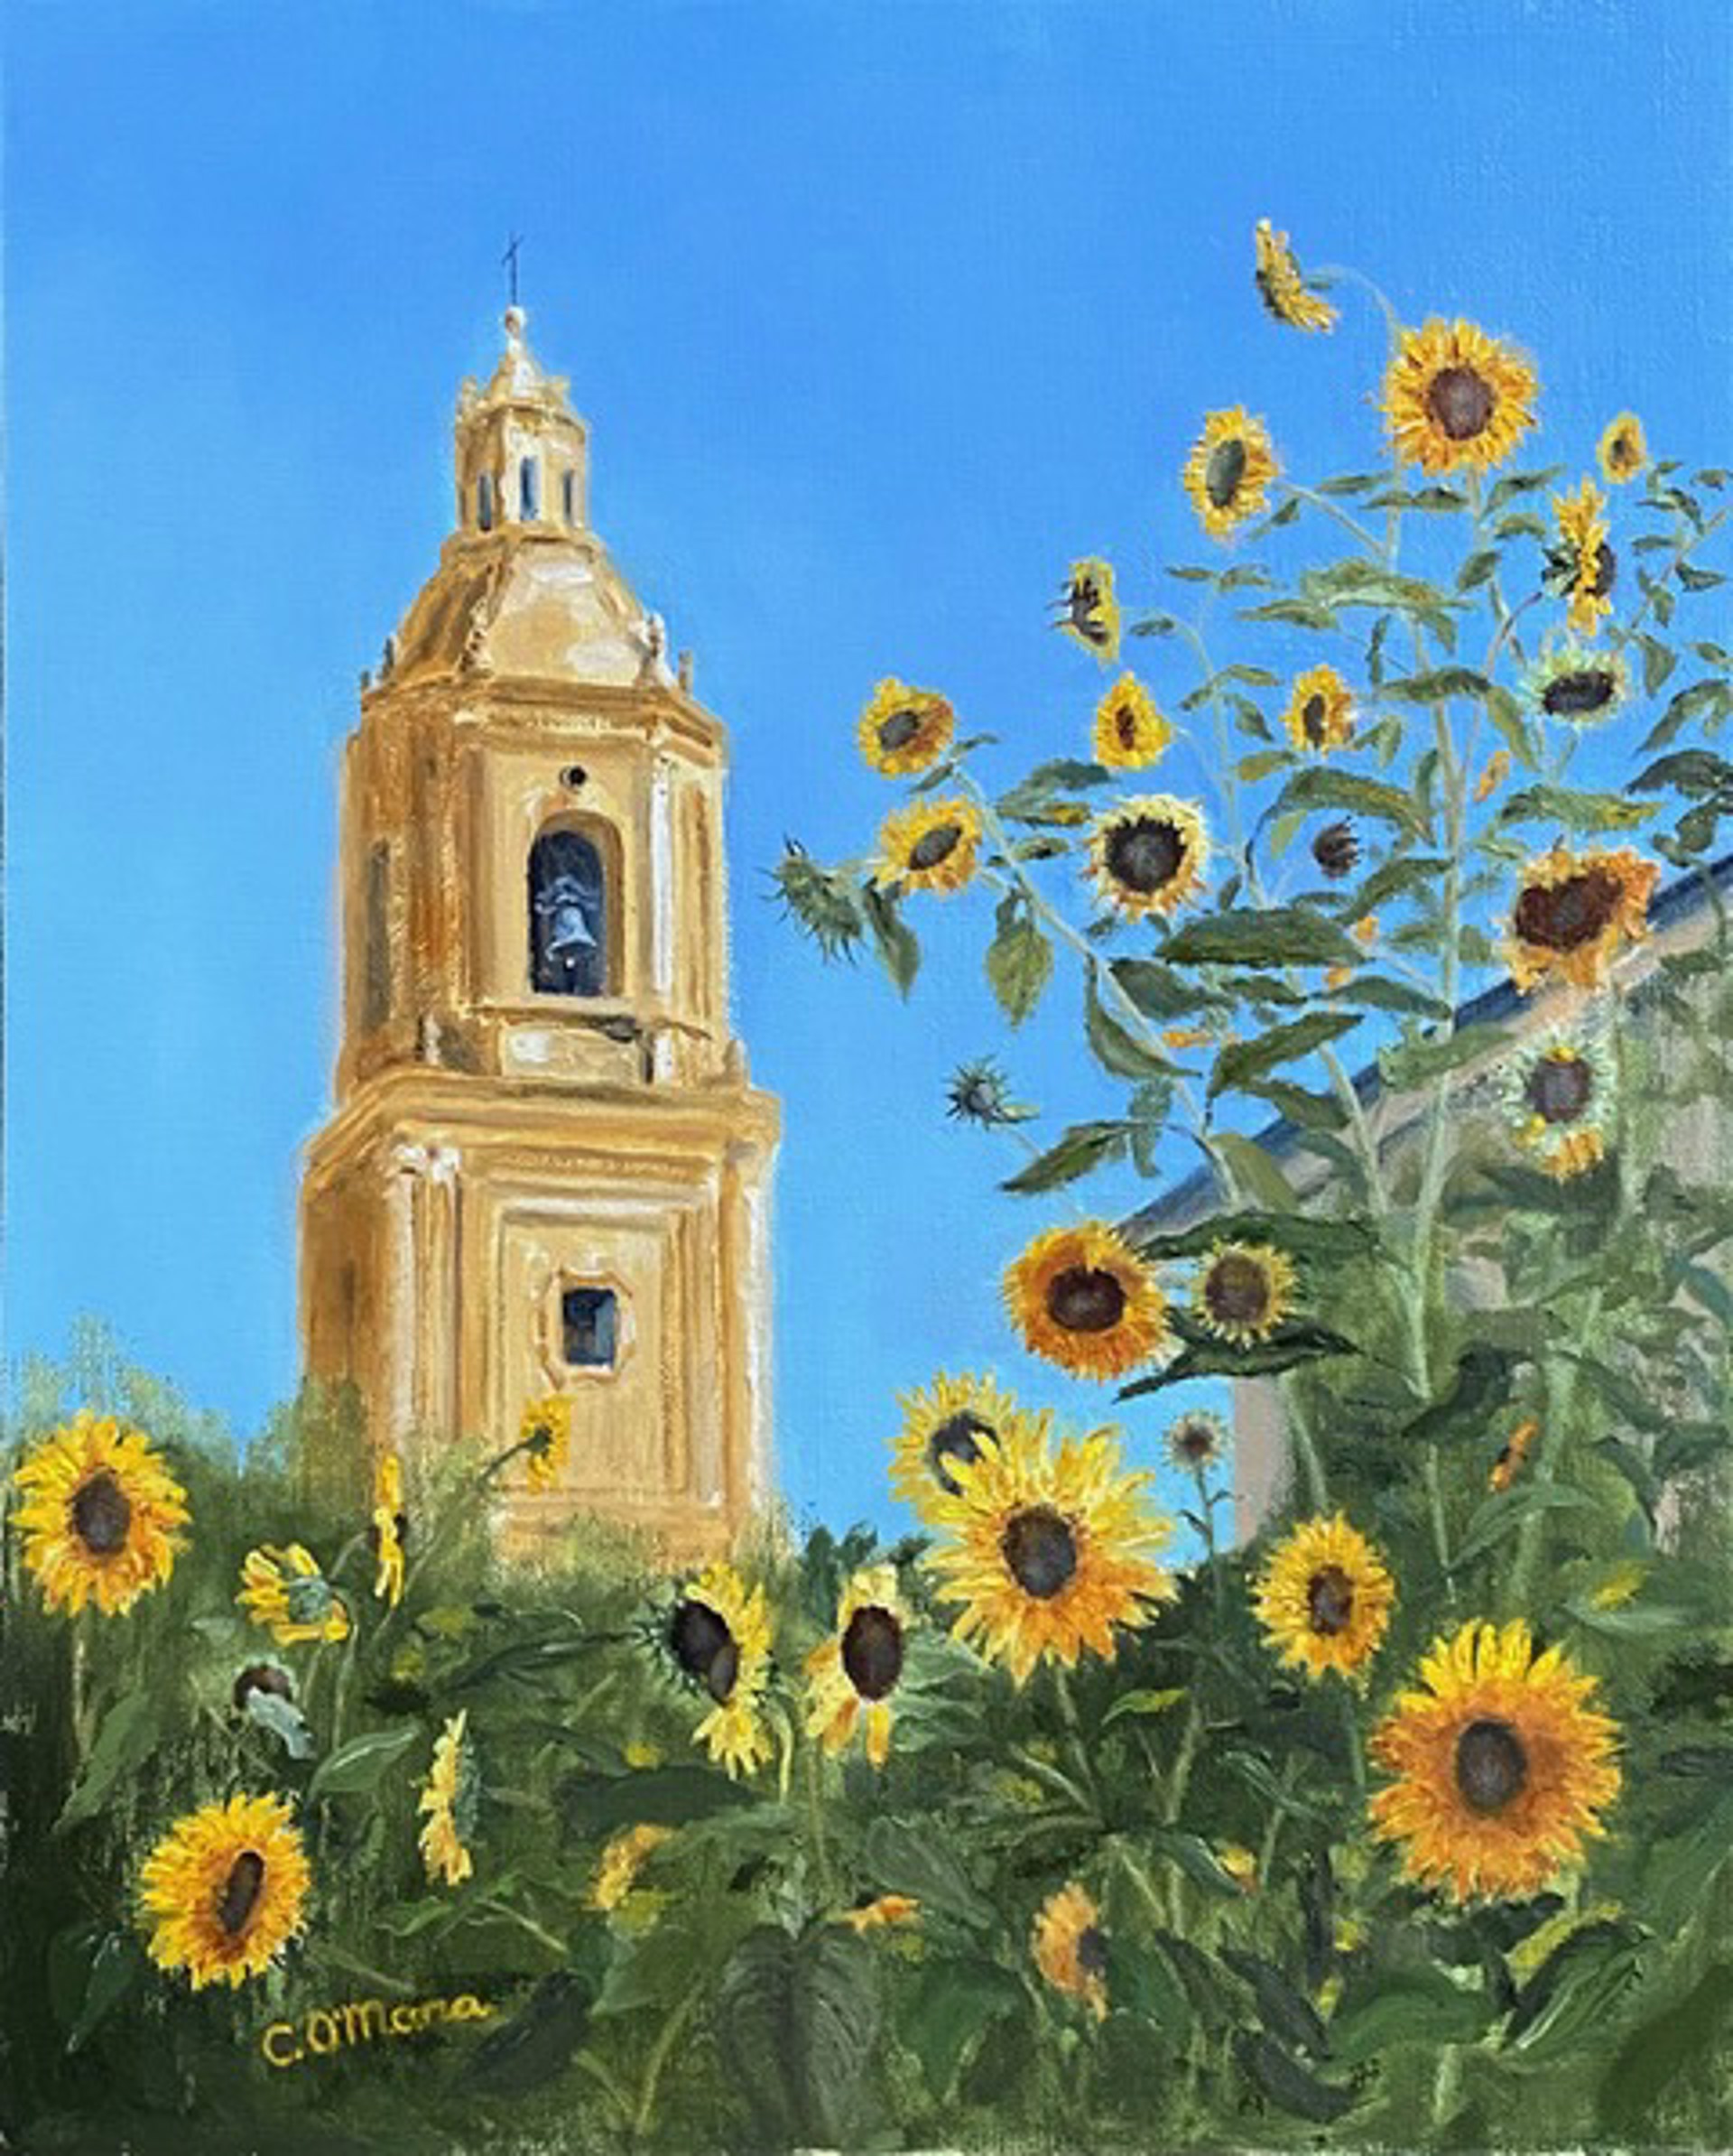 Sunflowers in Glory by Charles O'Mara